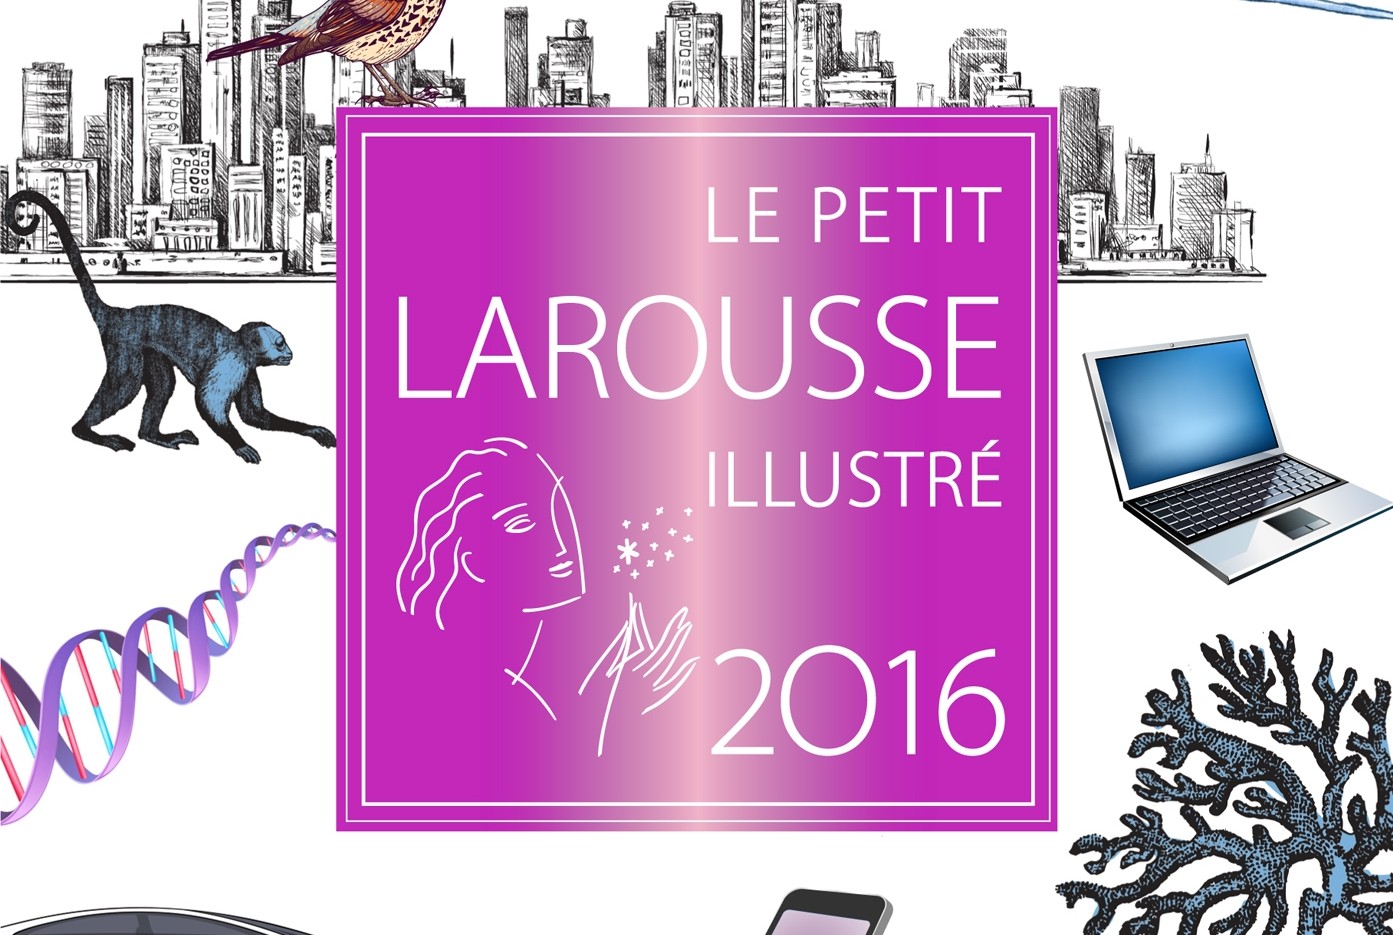 Le Petit Larousse illustré 2016